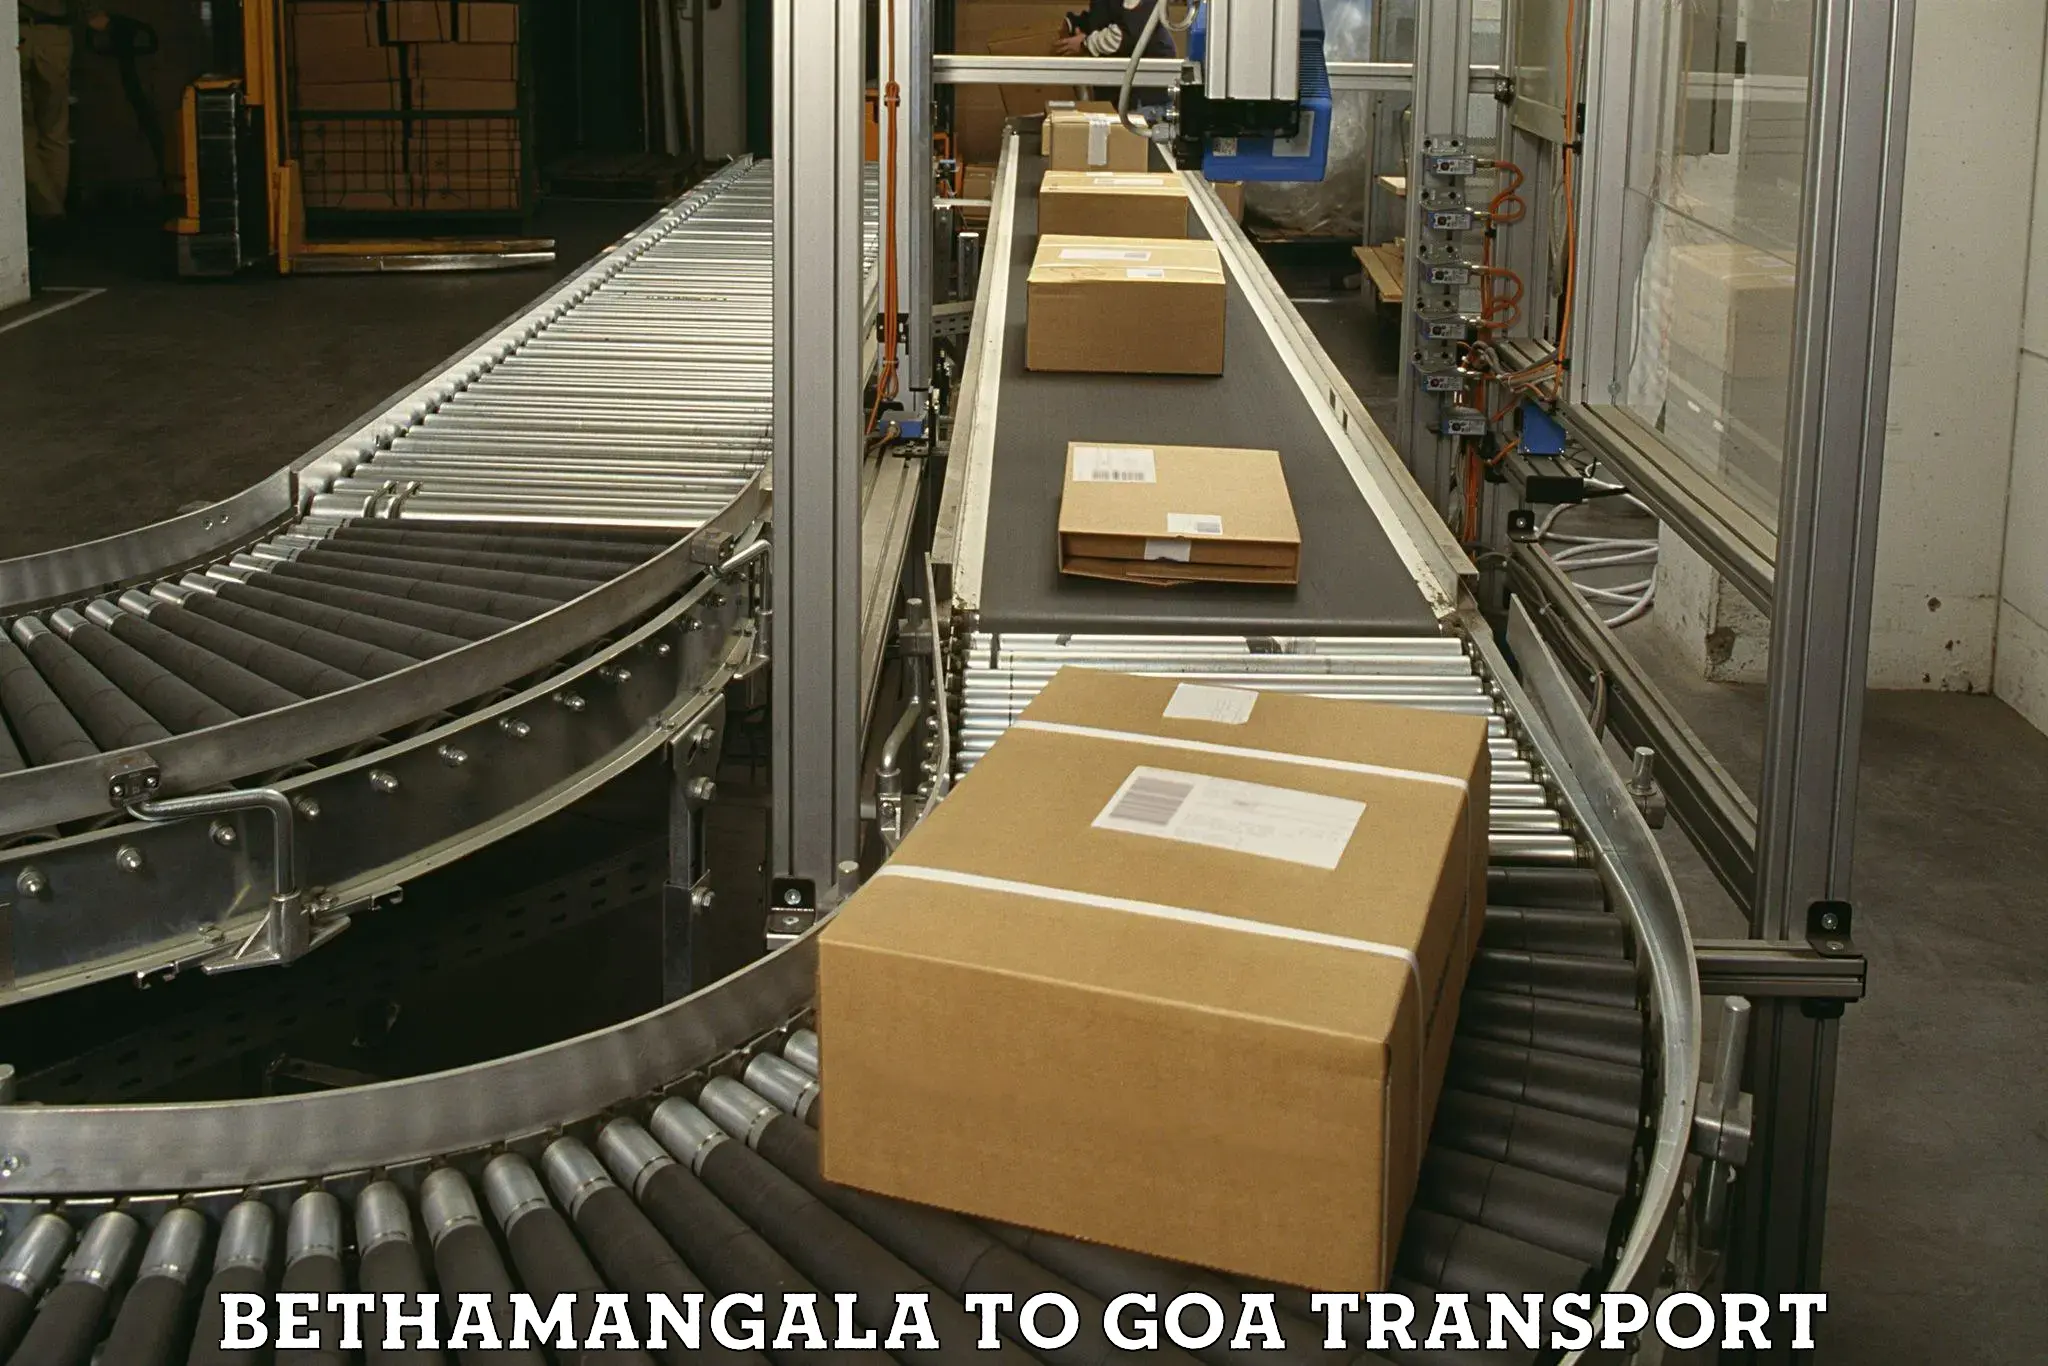 Daily transport service Bethamangala to Vasco da Gama